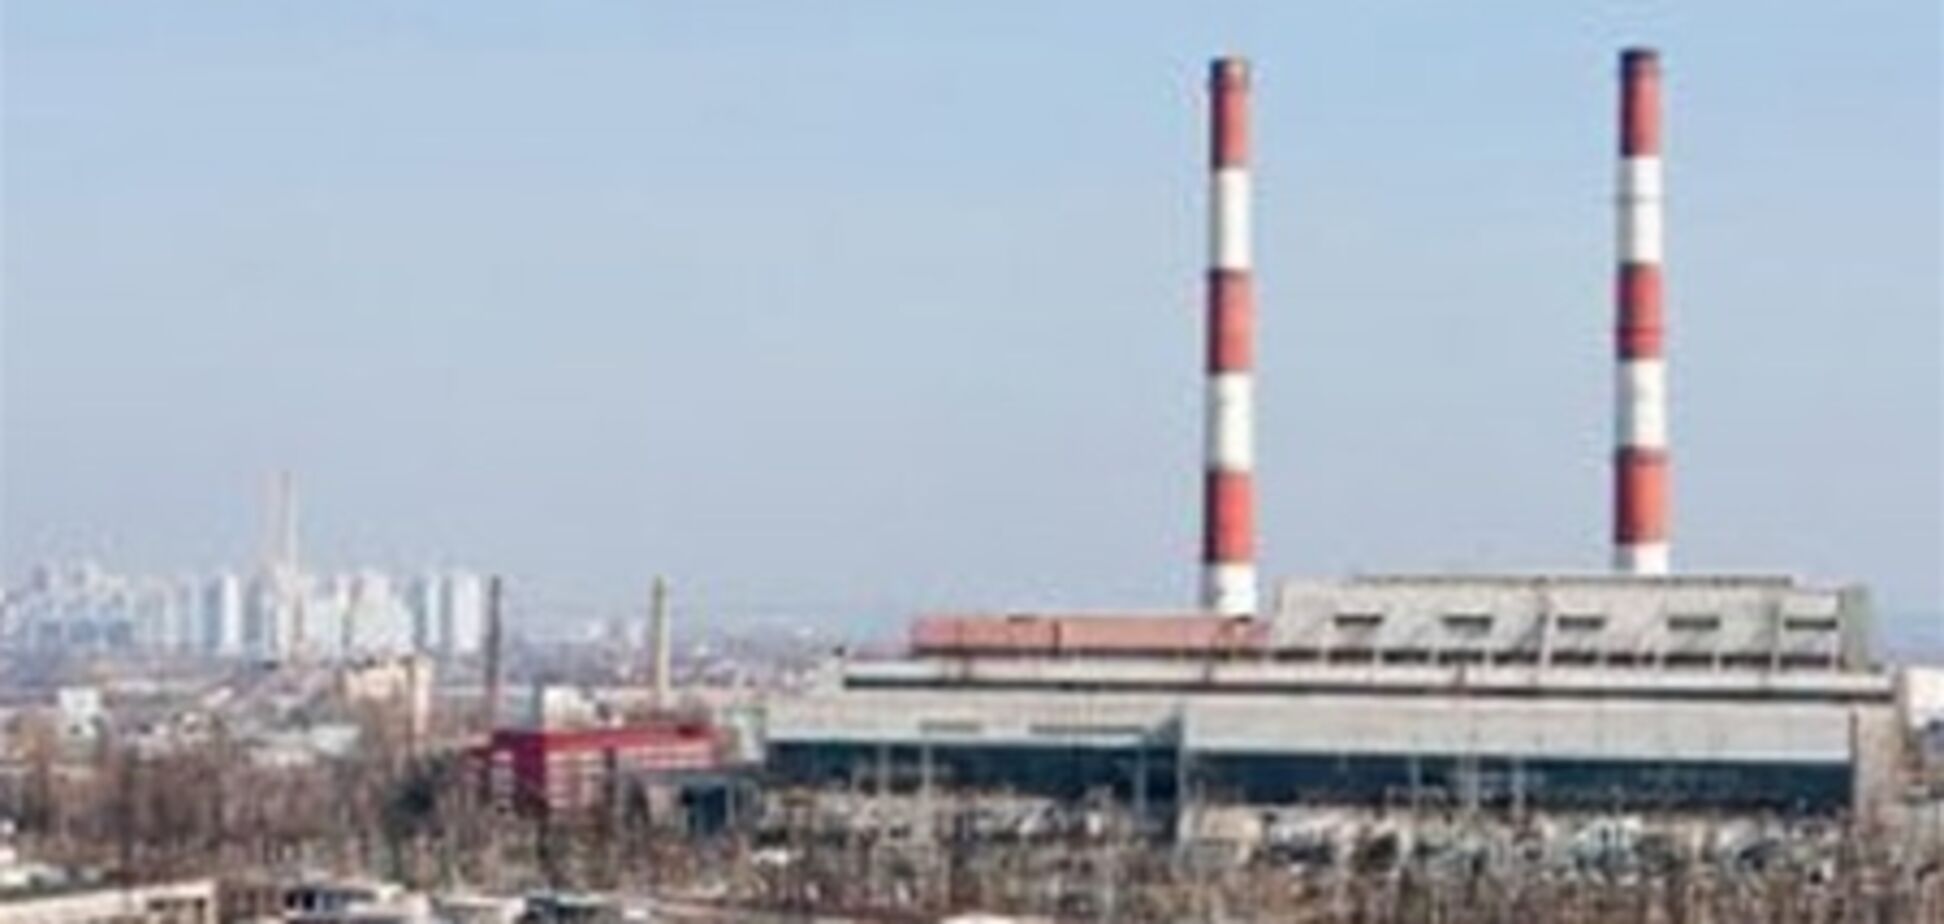 Мусороперерабатывающий завод перестанет отравлять Киев